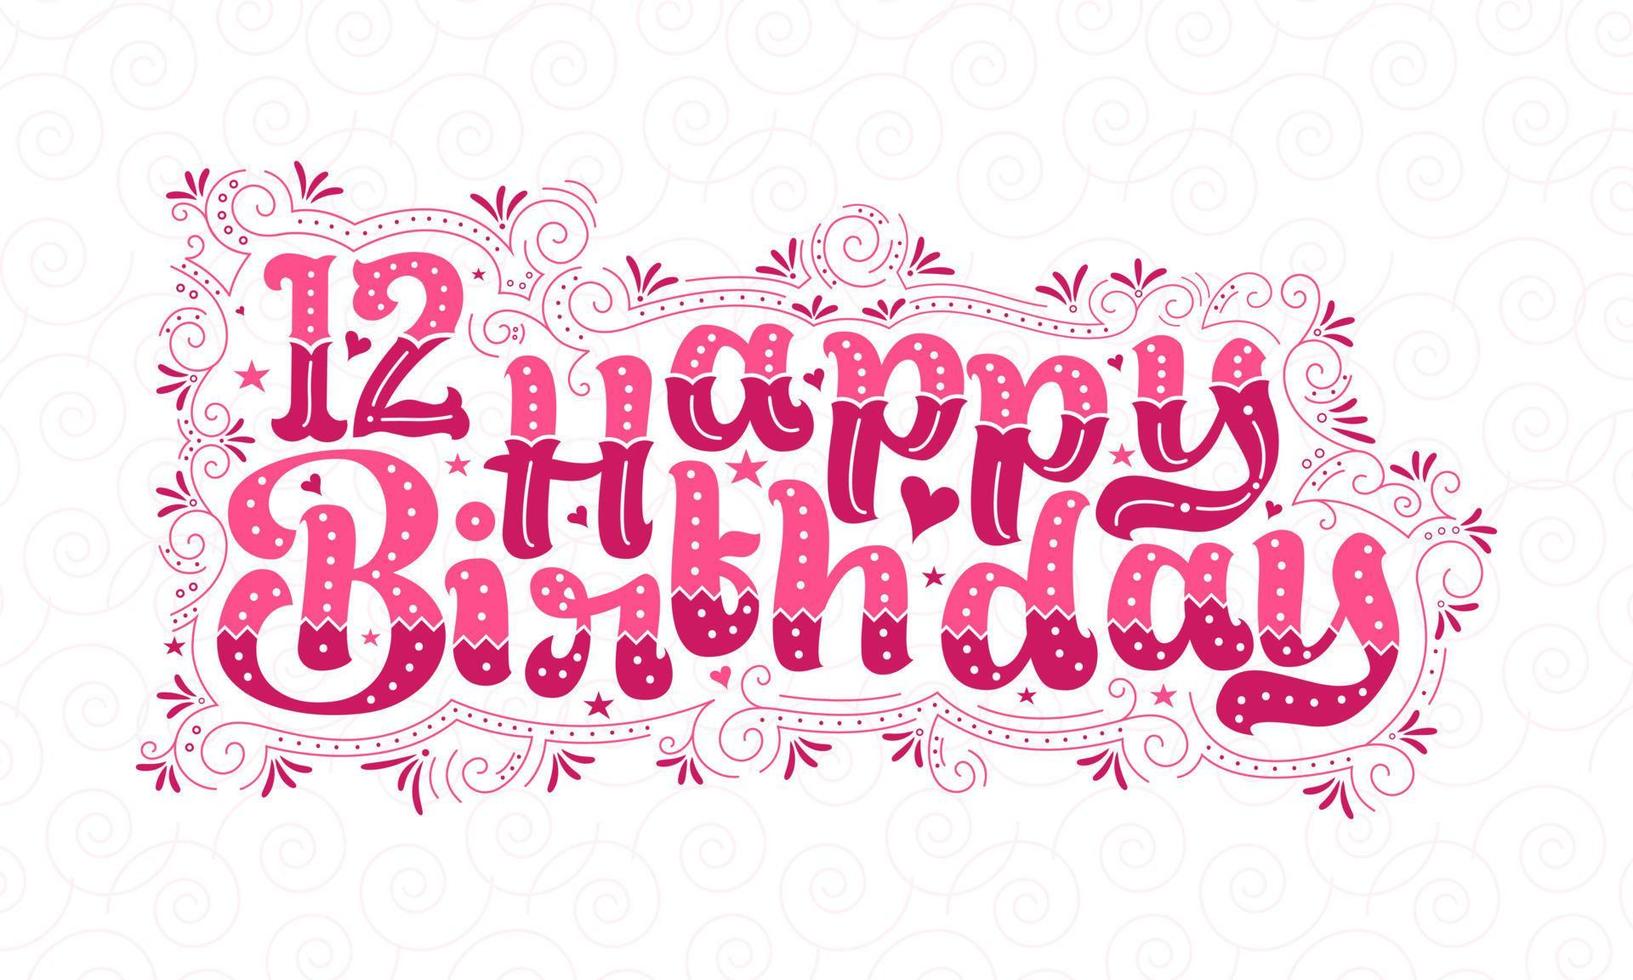 12e gelukkige verjaardag belettering, 12 jaar verjaardag mooi typografieontwerp met roze stippen, lijnen en bladeren. vector